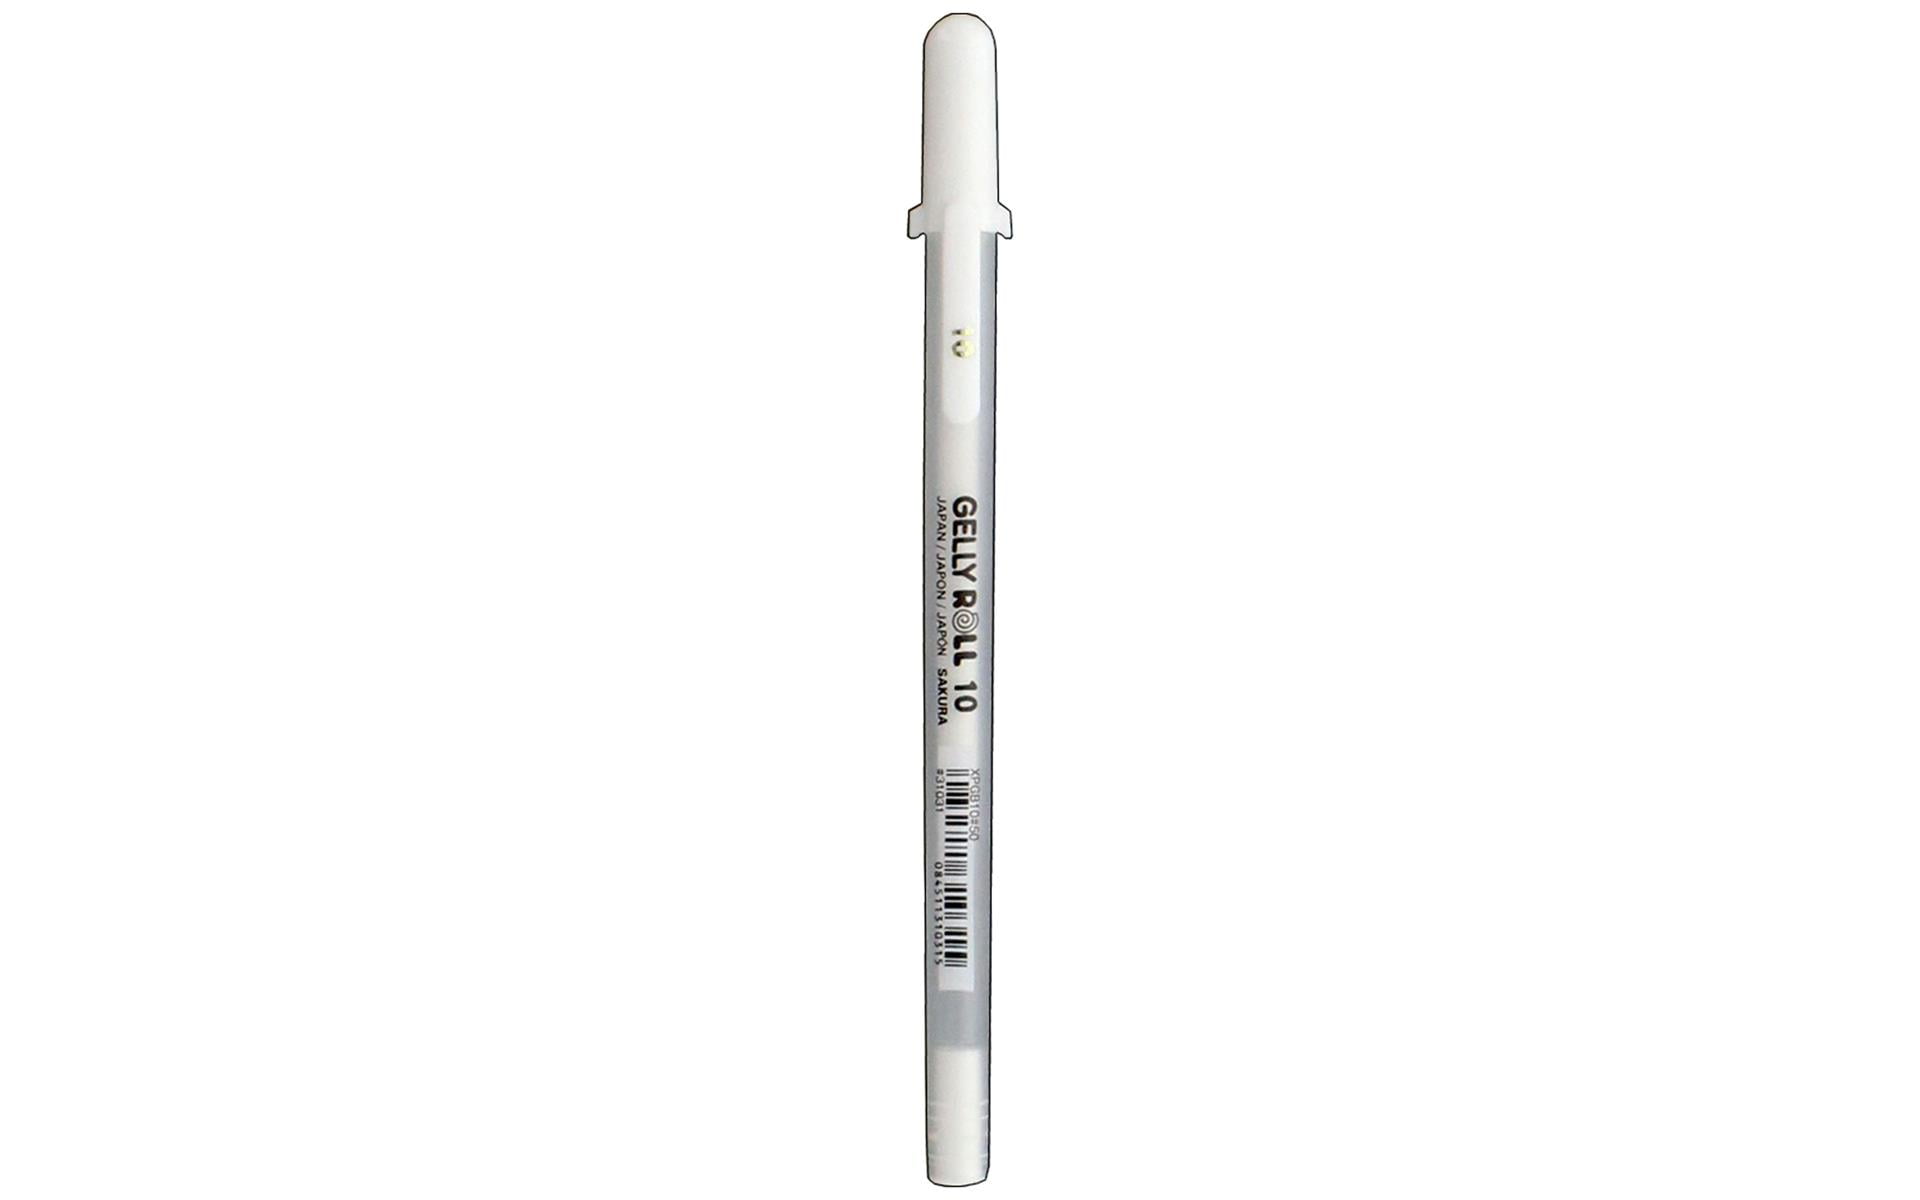 Sakura Gelly Roll Gel Pens - 05/08/10 - Bright White Ink - Blister Pack of  3